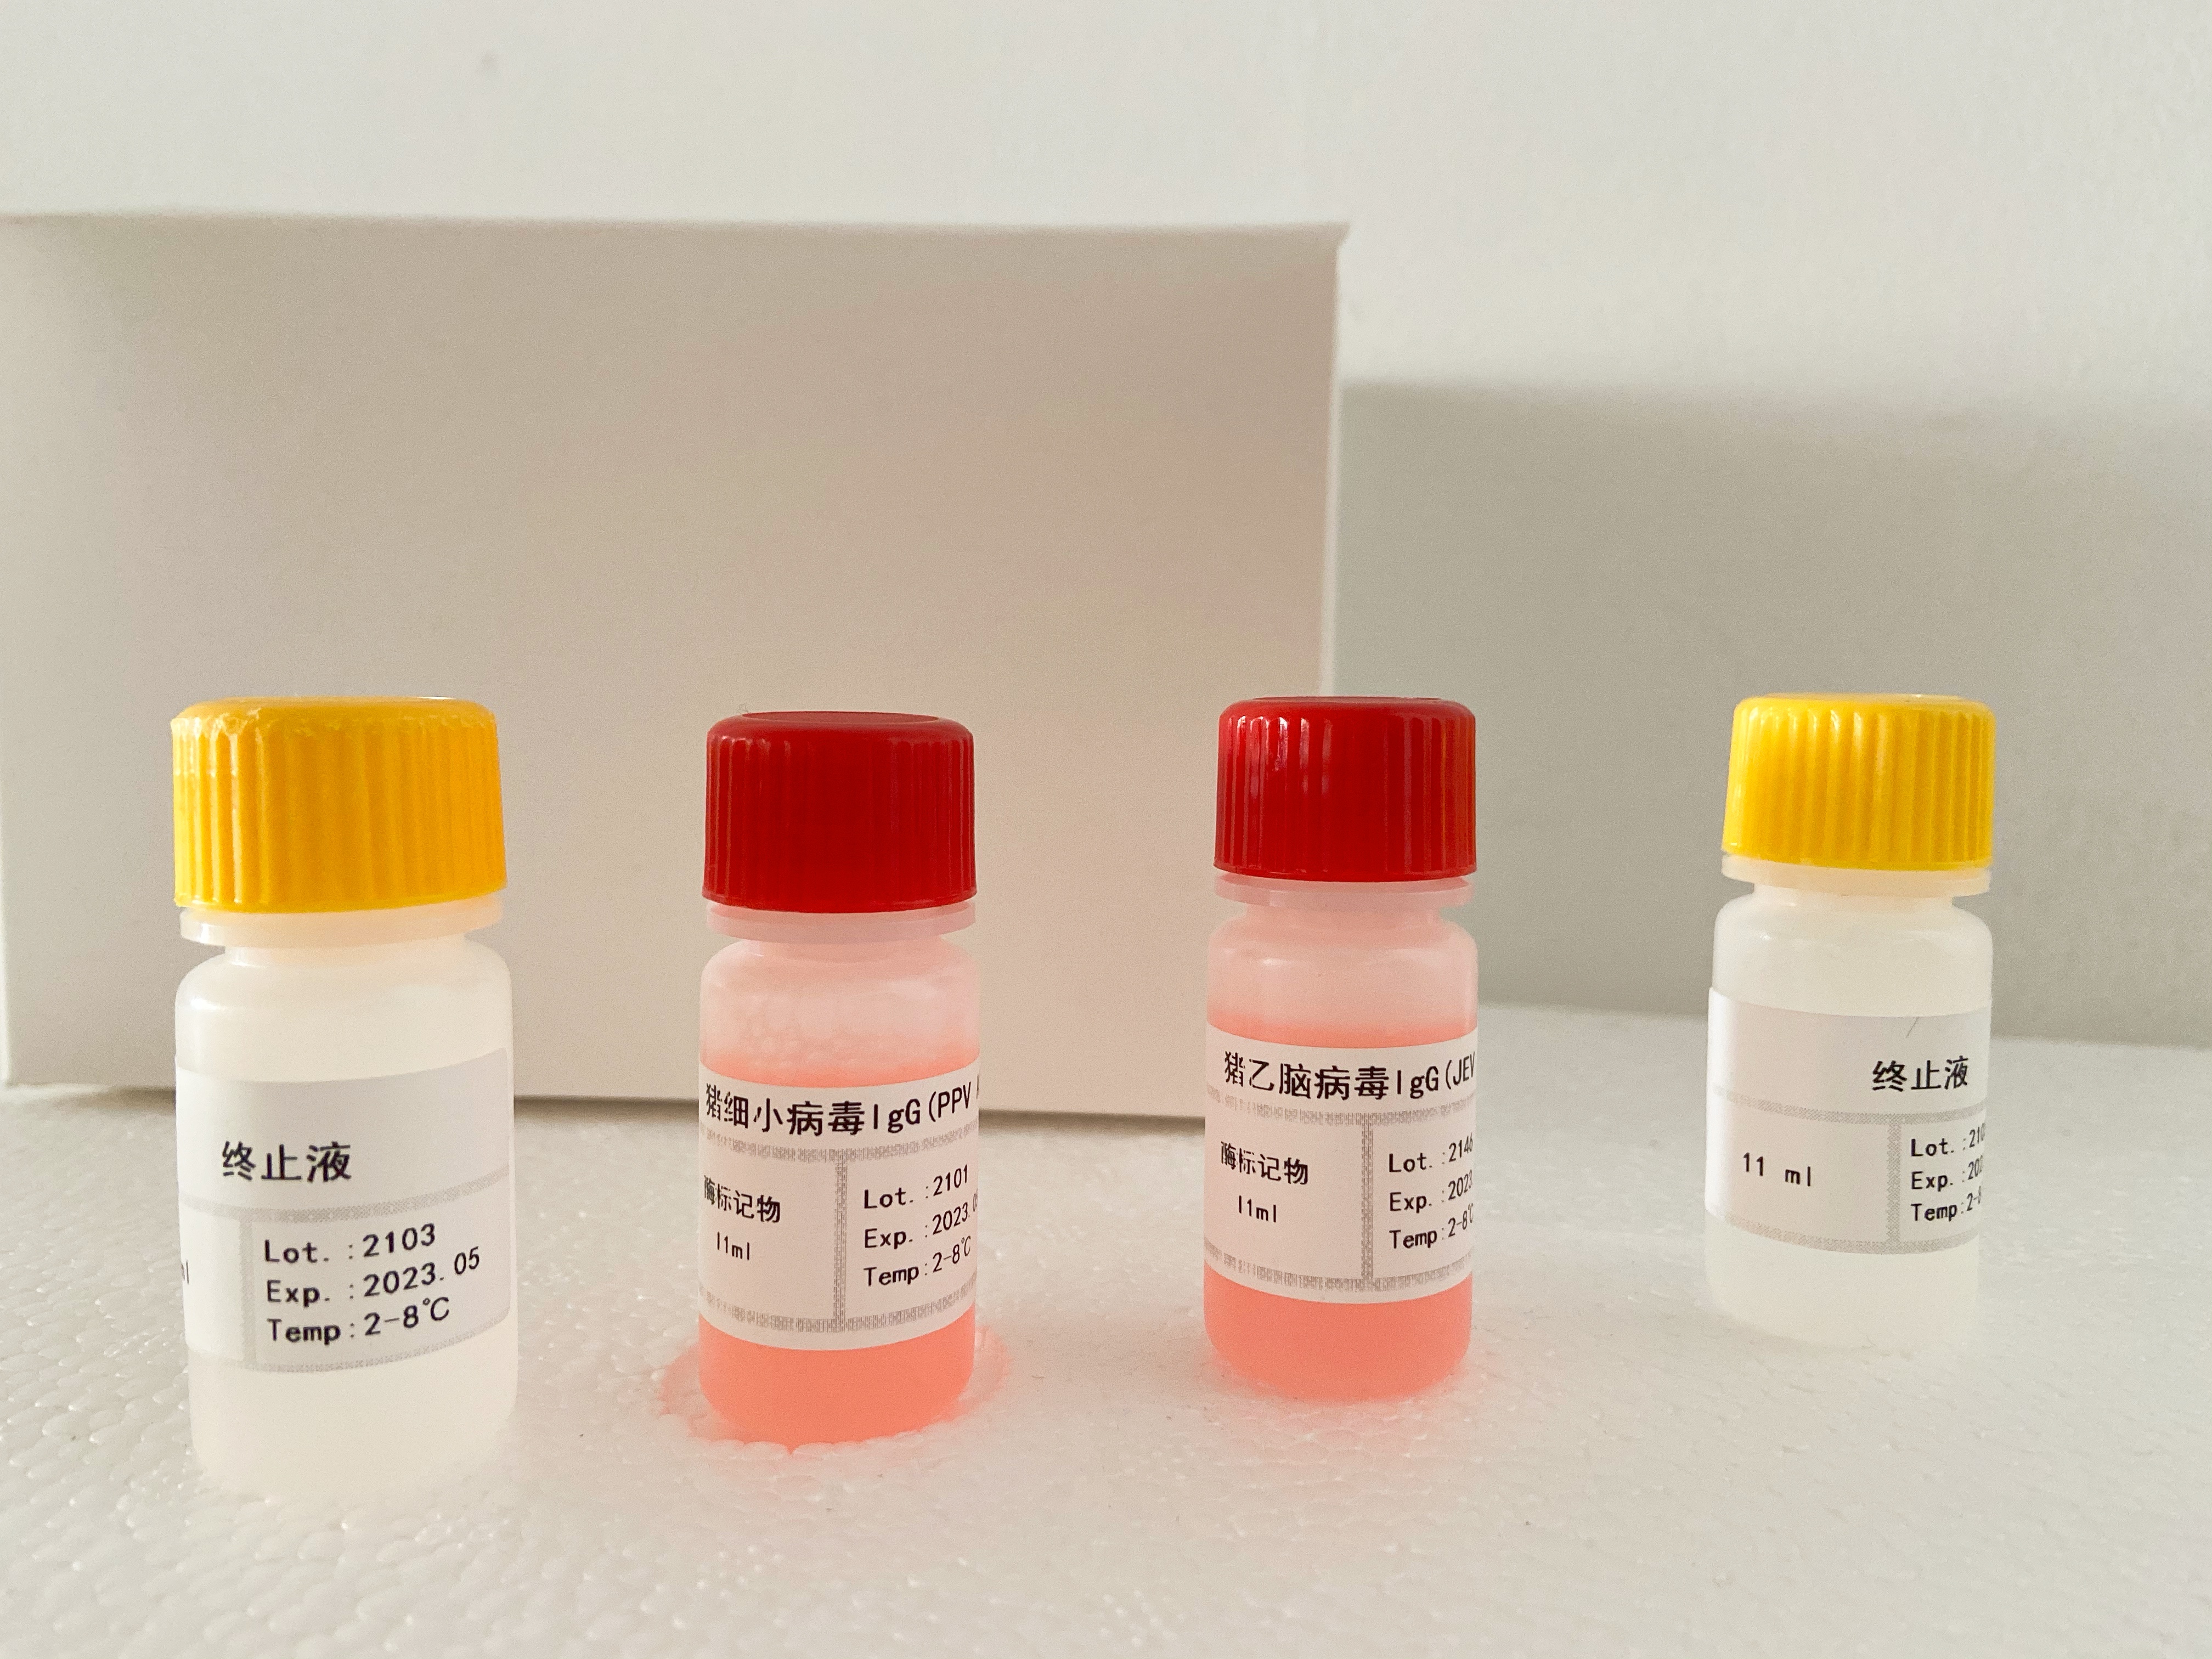 小鼠胎盘生长因子(PLGF)检测试剂盒